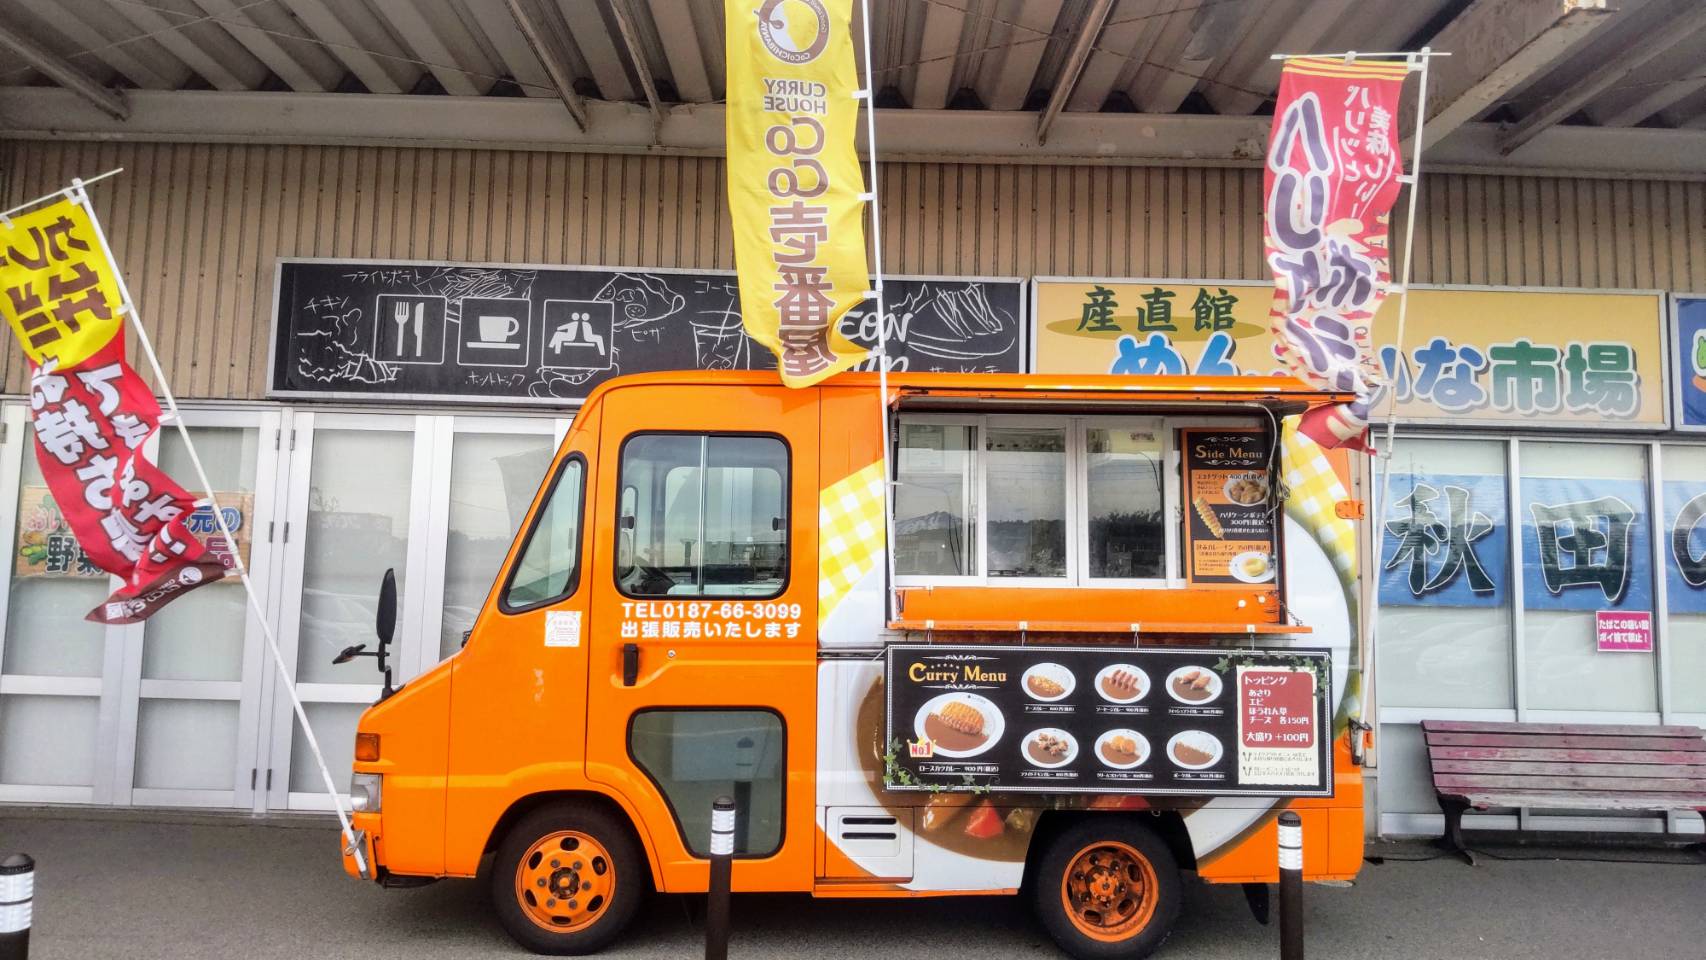 カレーハウスCoCo壱番屋 大曲東川店 秋田の街に「おいしい」を運びます キッチンカー協会